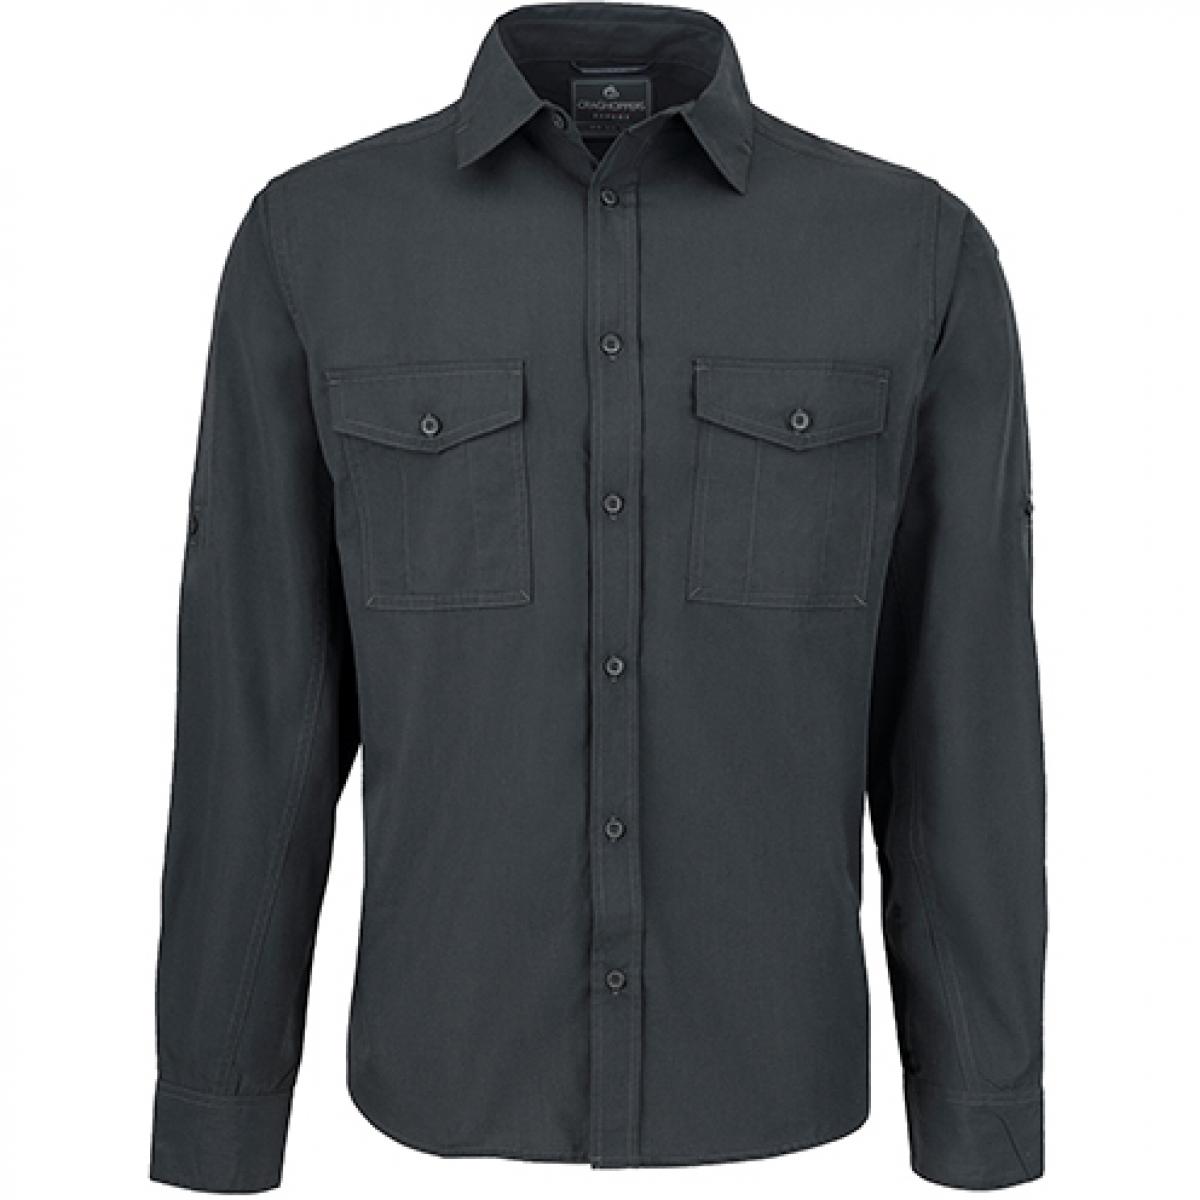 Hersteller: Craghoppers Expert Herstellernummer: CES001 Artikelbezeichnung: Expert Kiwi Long Sleeved Shirt Farbe: Carbon Grey